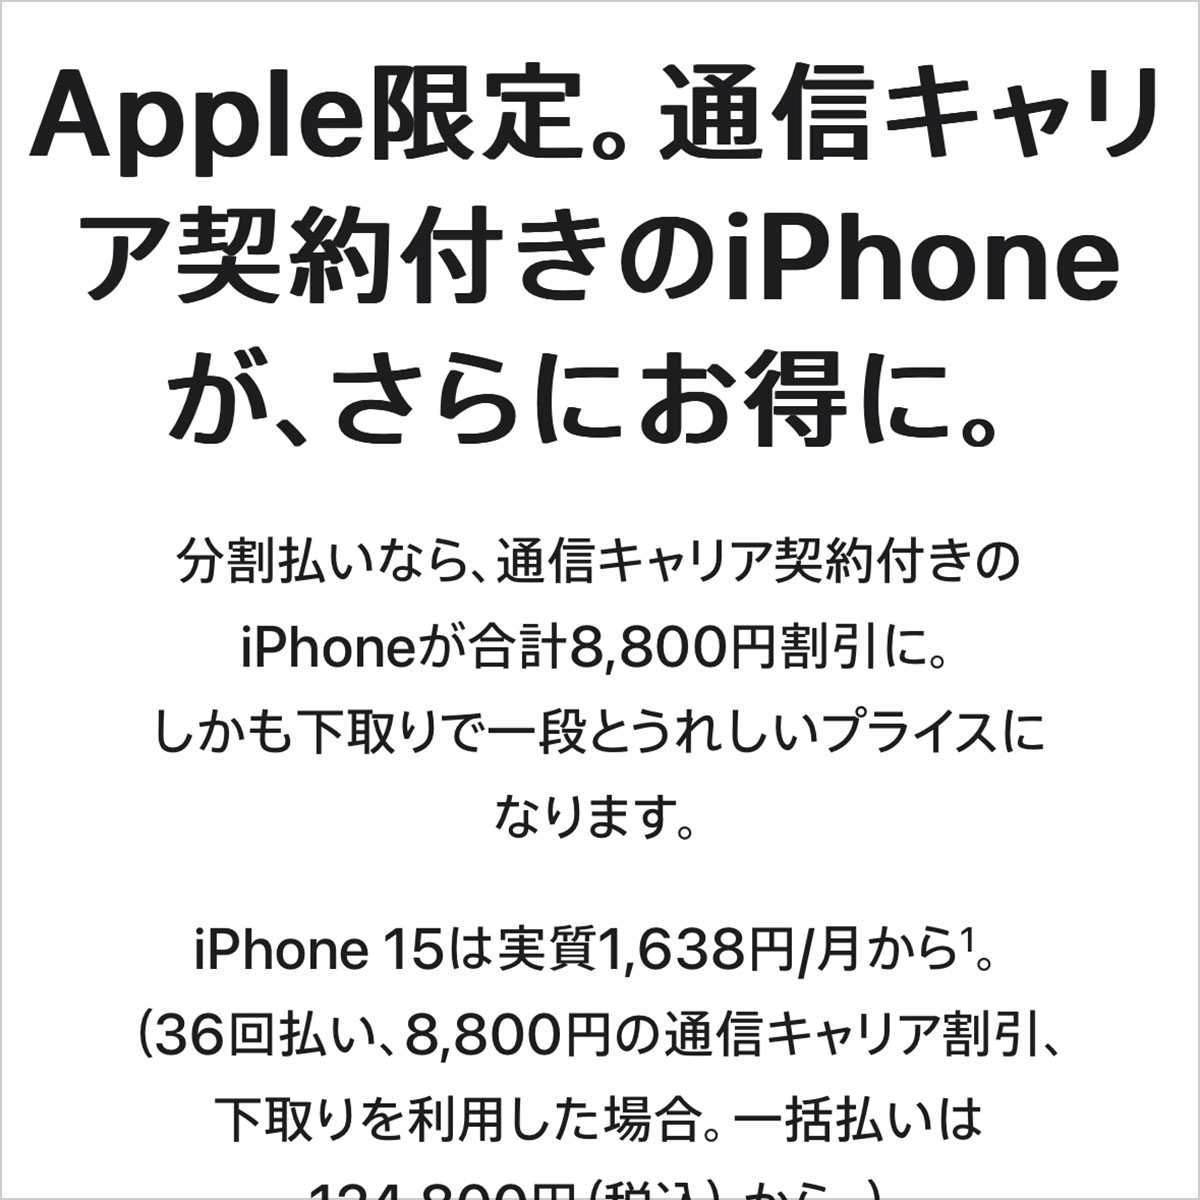 Apple限定。通信キャリア契約付きのiPhoneが、さらにお得に。